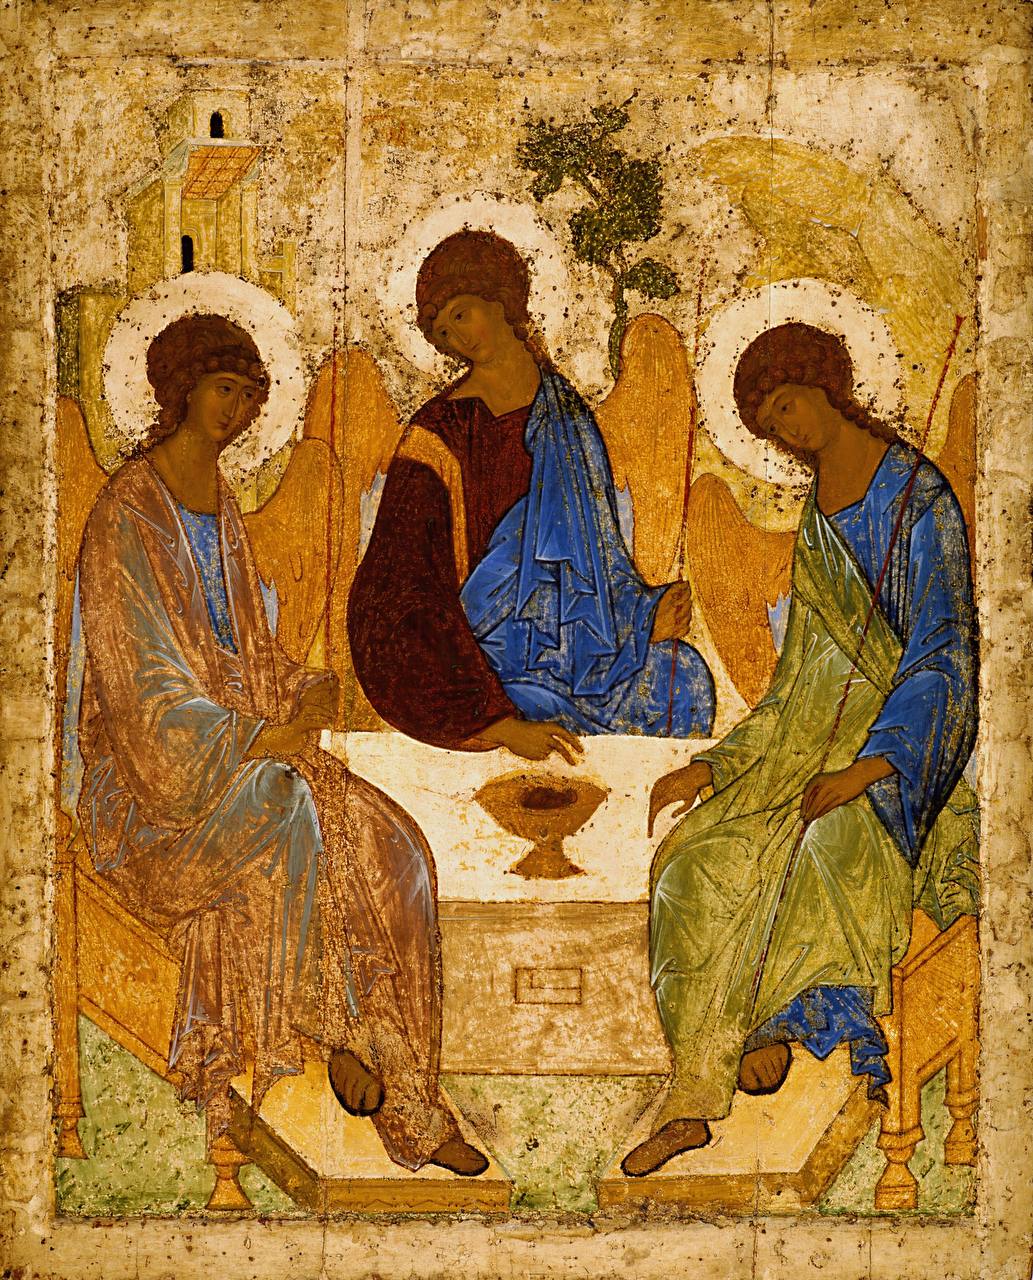  Чудотворная икона «Троица» Андрея Рублева возвращается Русской Православной Церкви